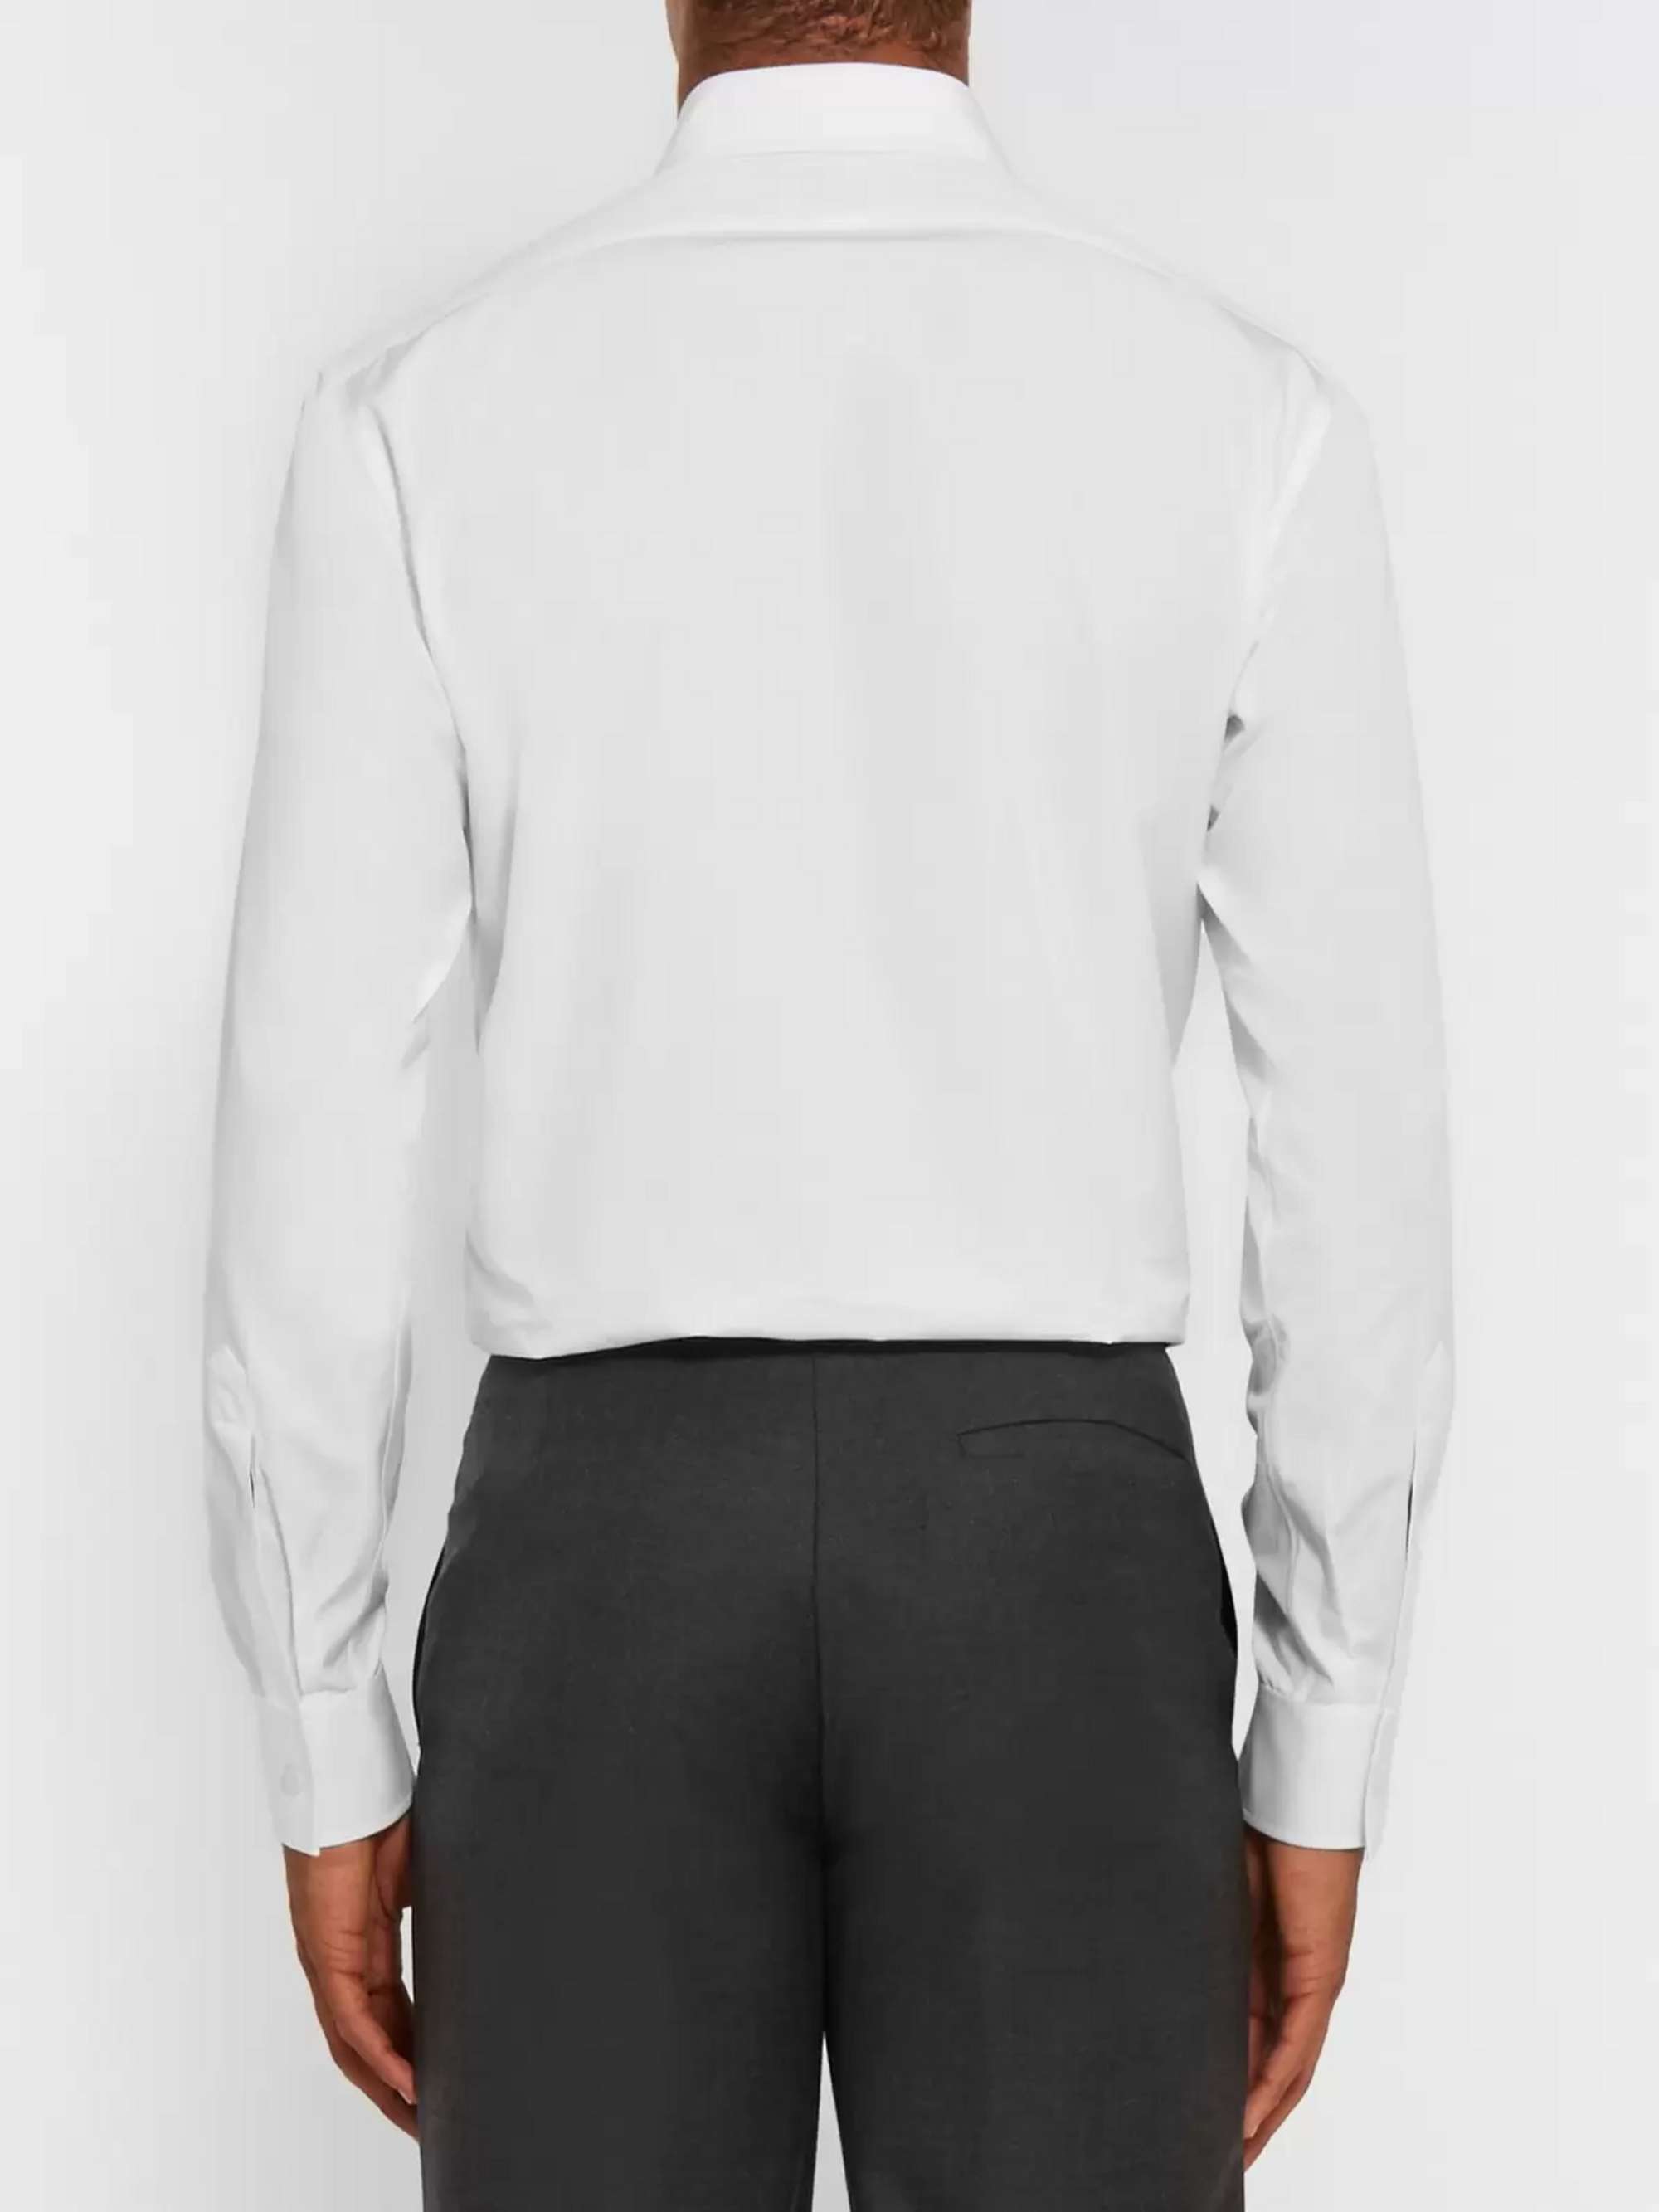 CHARVET White Slim-Fit Cotton Shirt